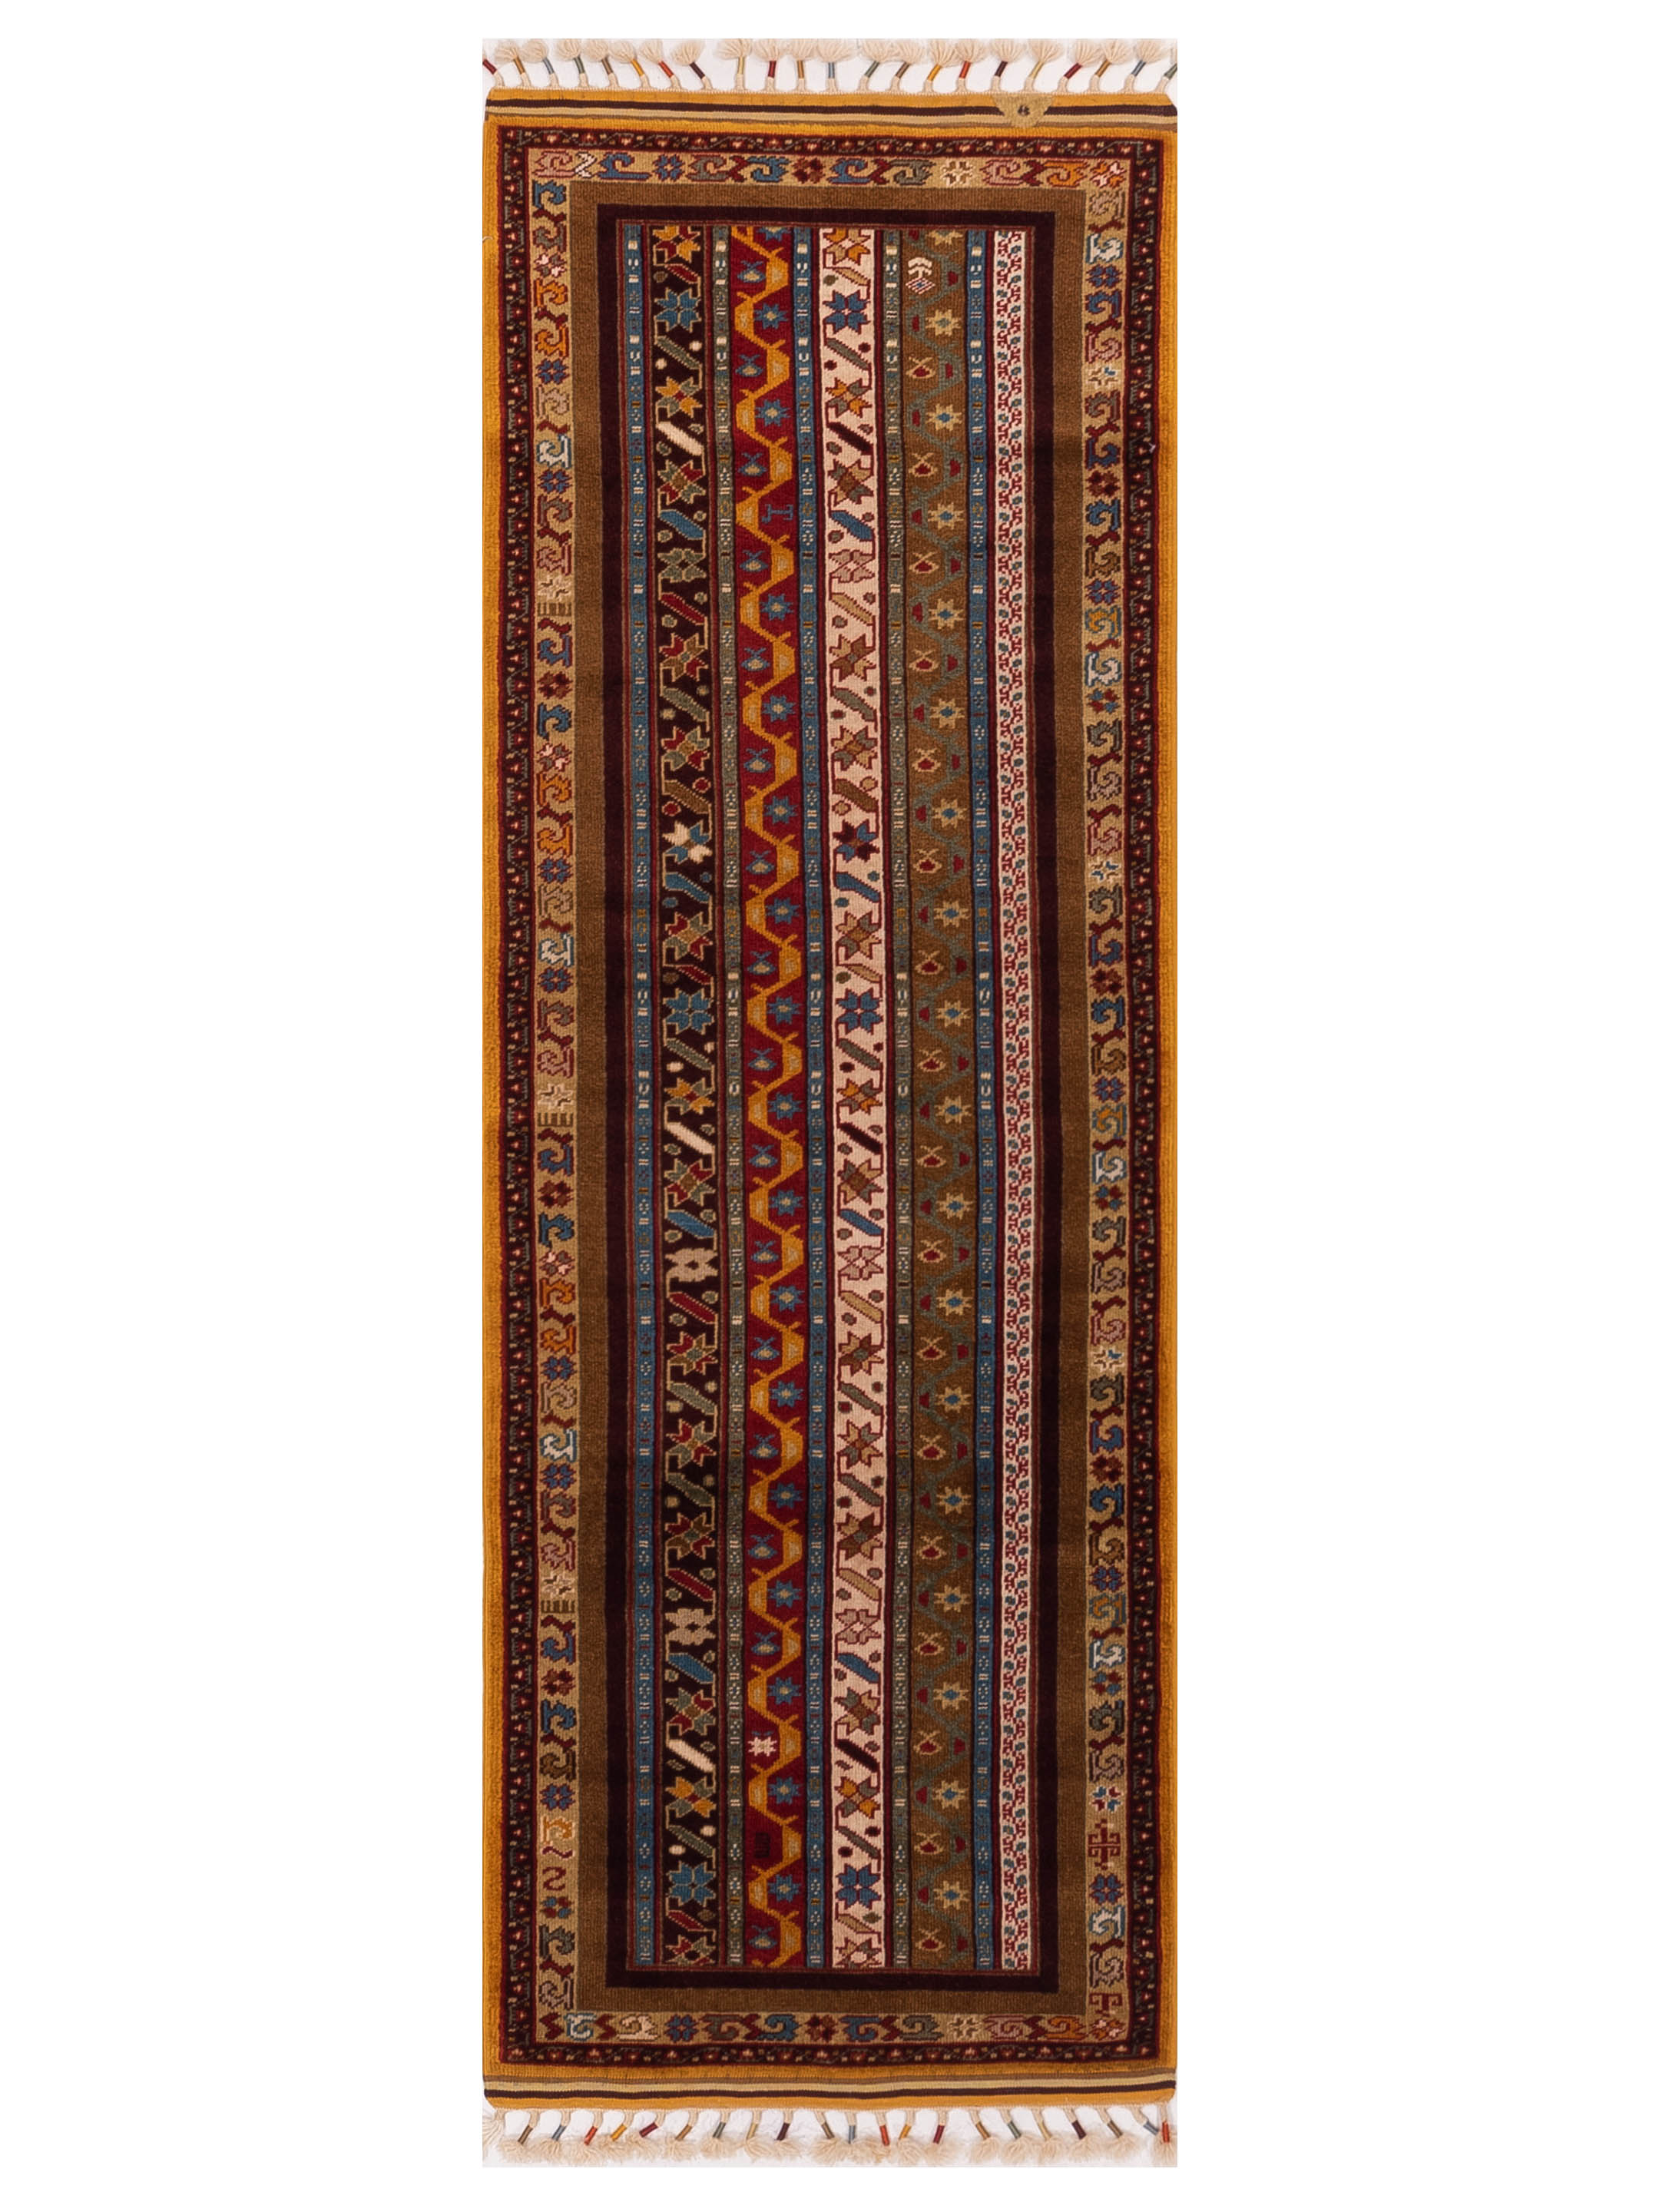 Tribal Geometric Multi color runner rug	